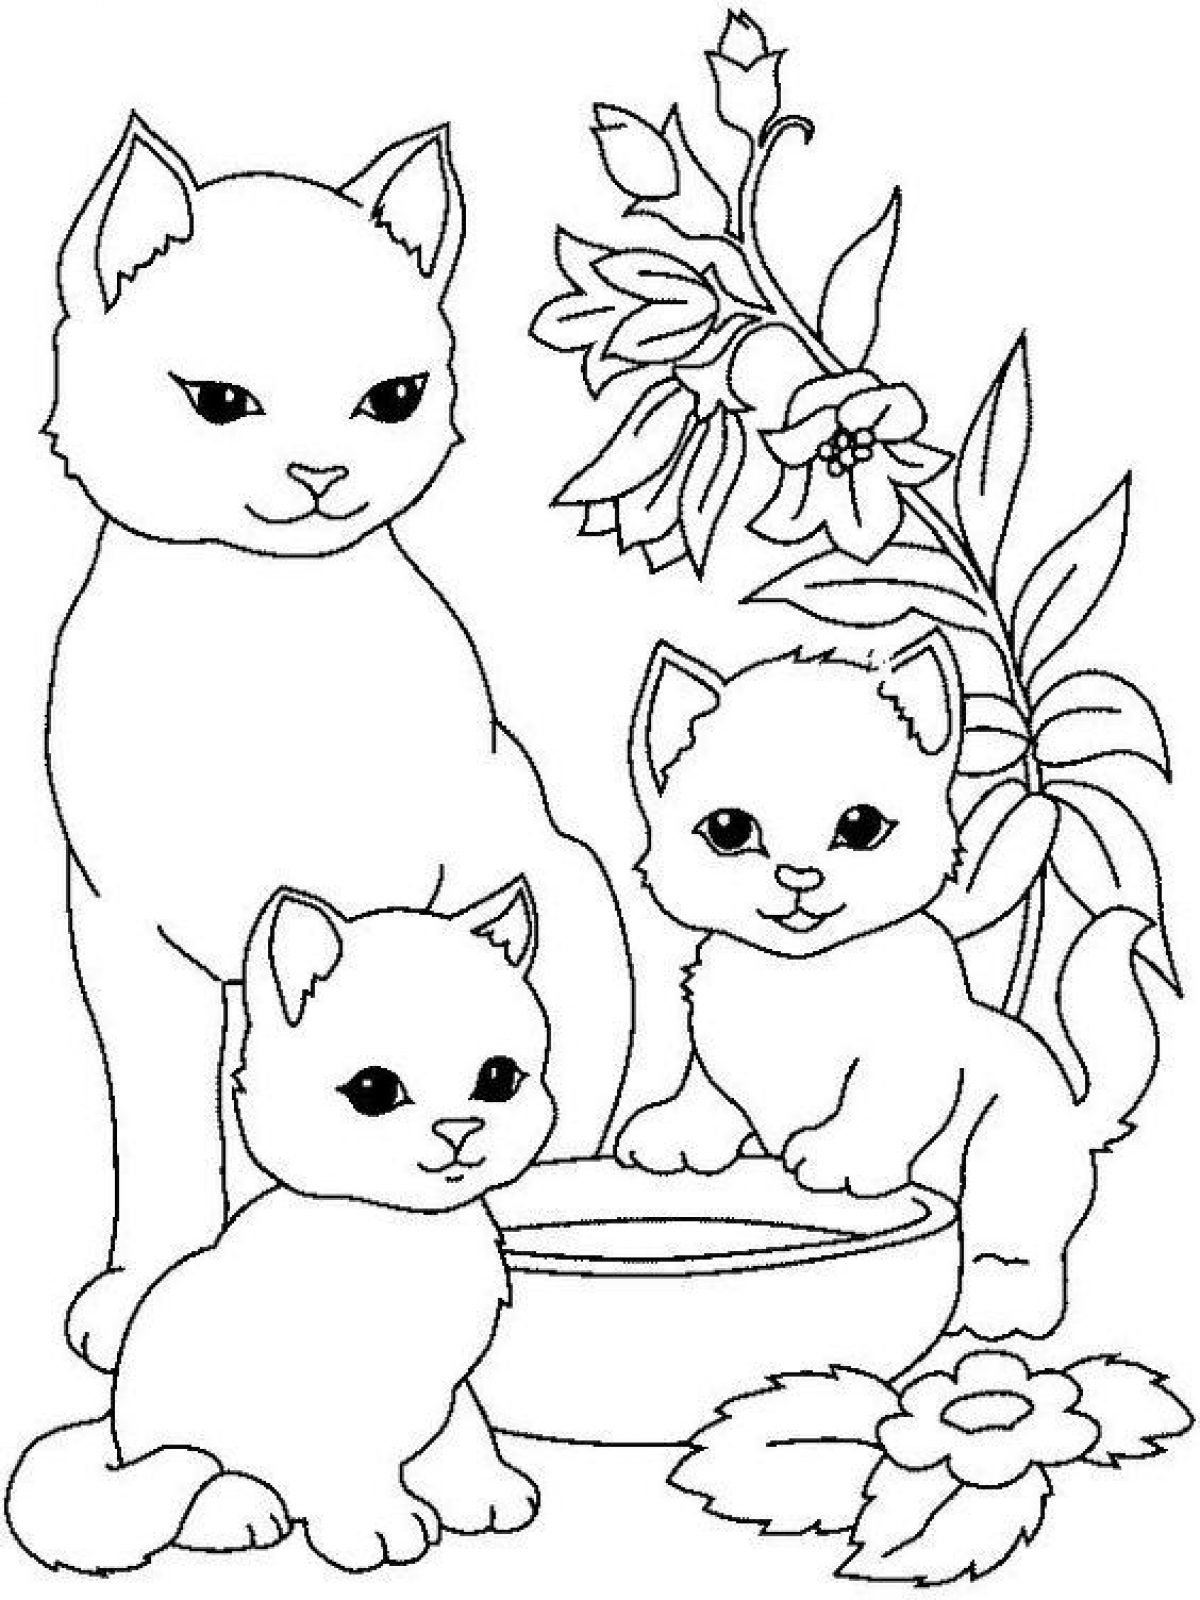 Увлекательная раскраска кошек для детей